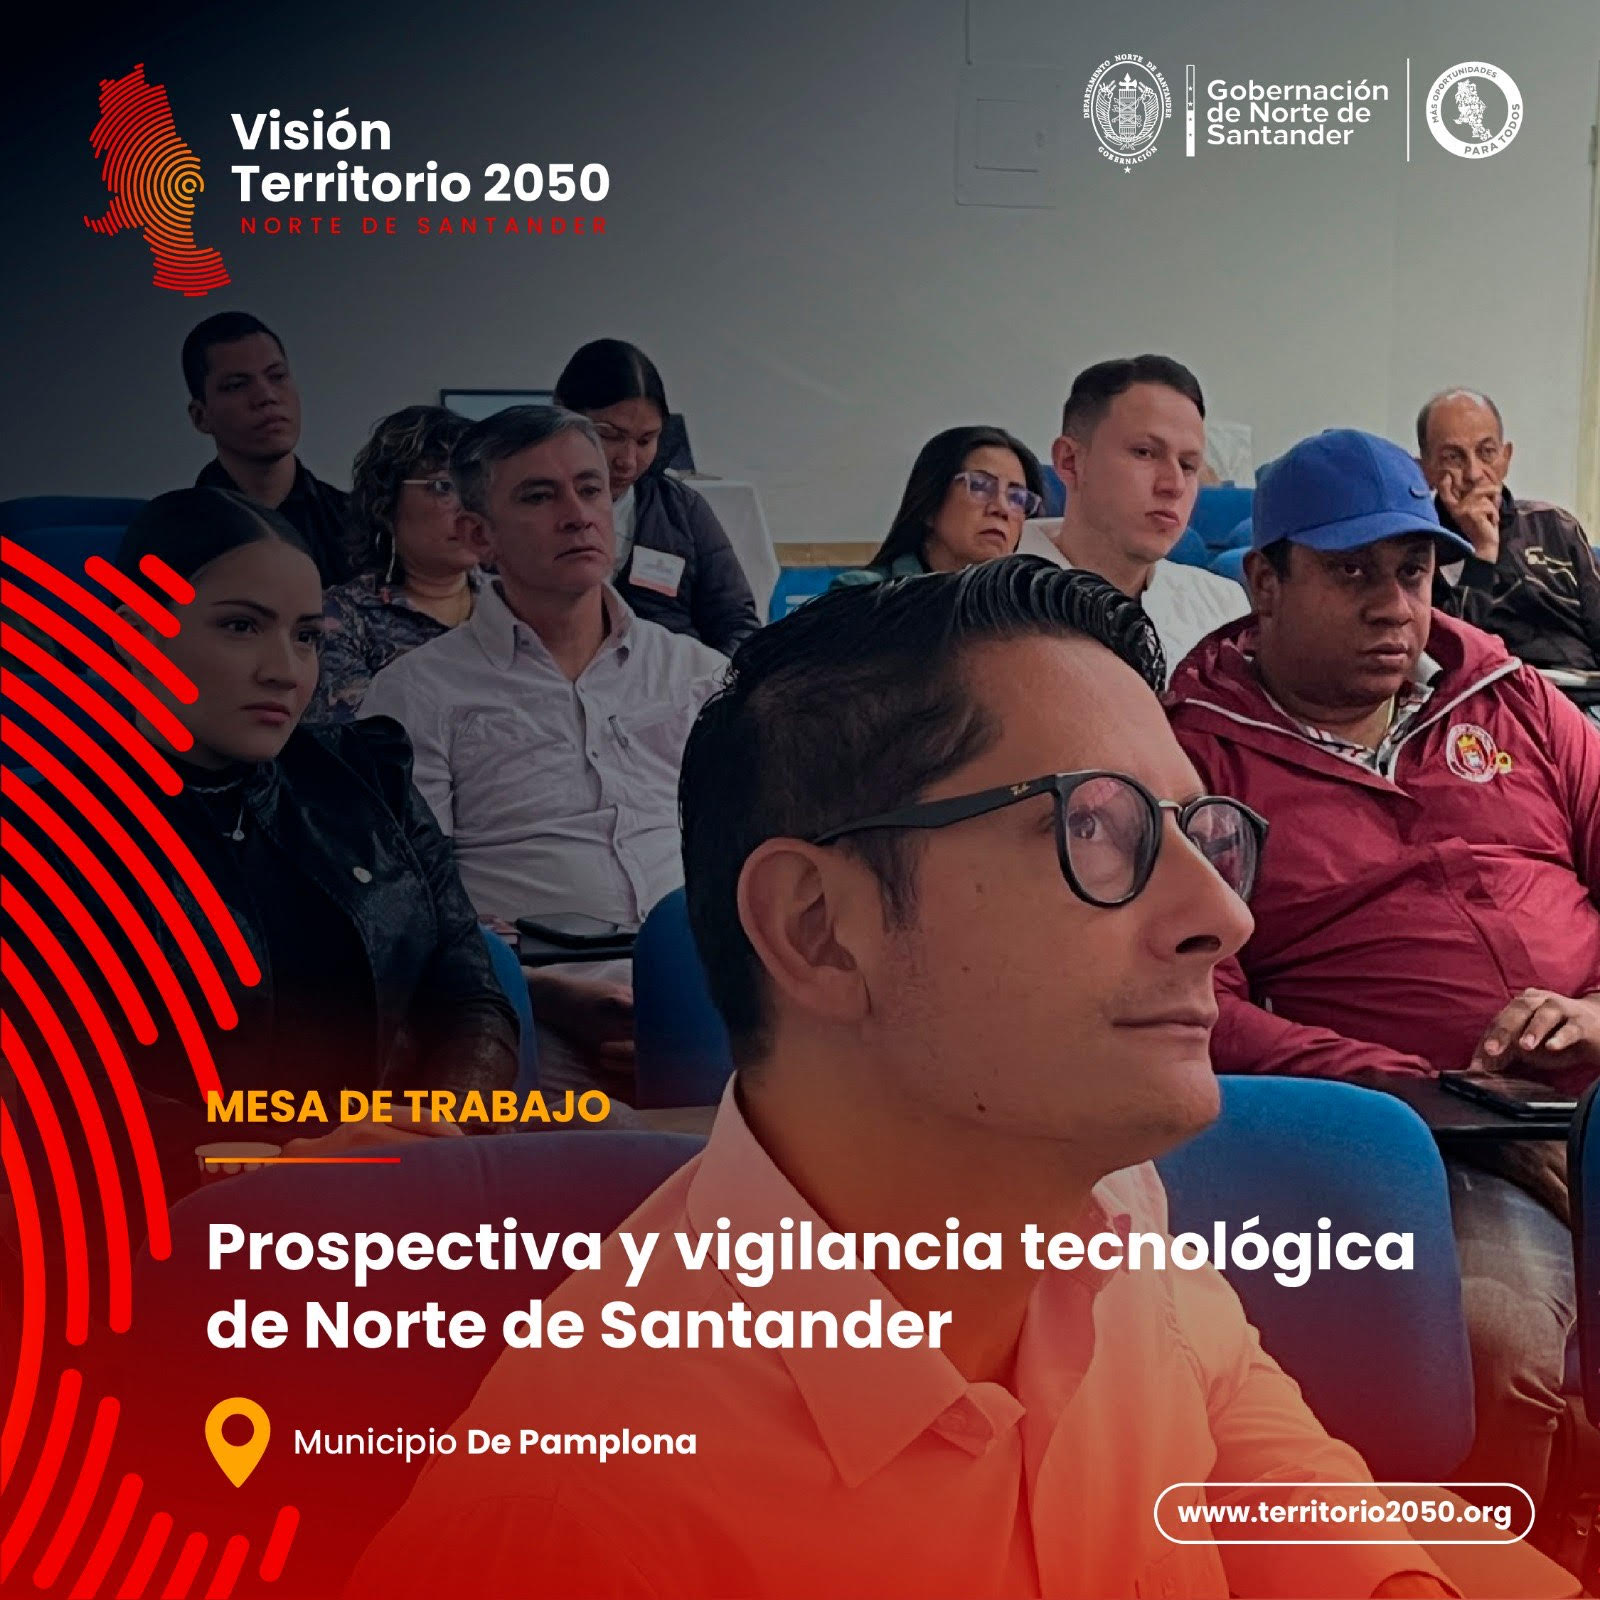 Exitoso proceso para construcción del Plan Prospectivo Norte de Santander 2020 – 2050